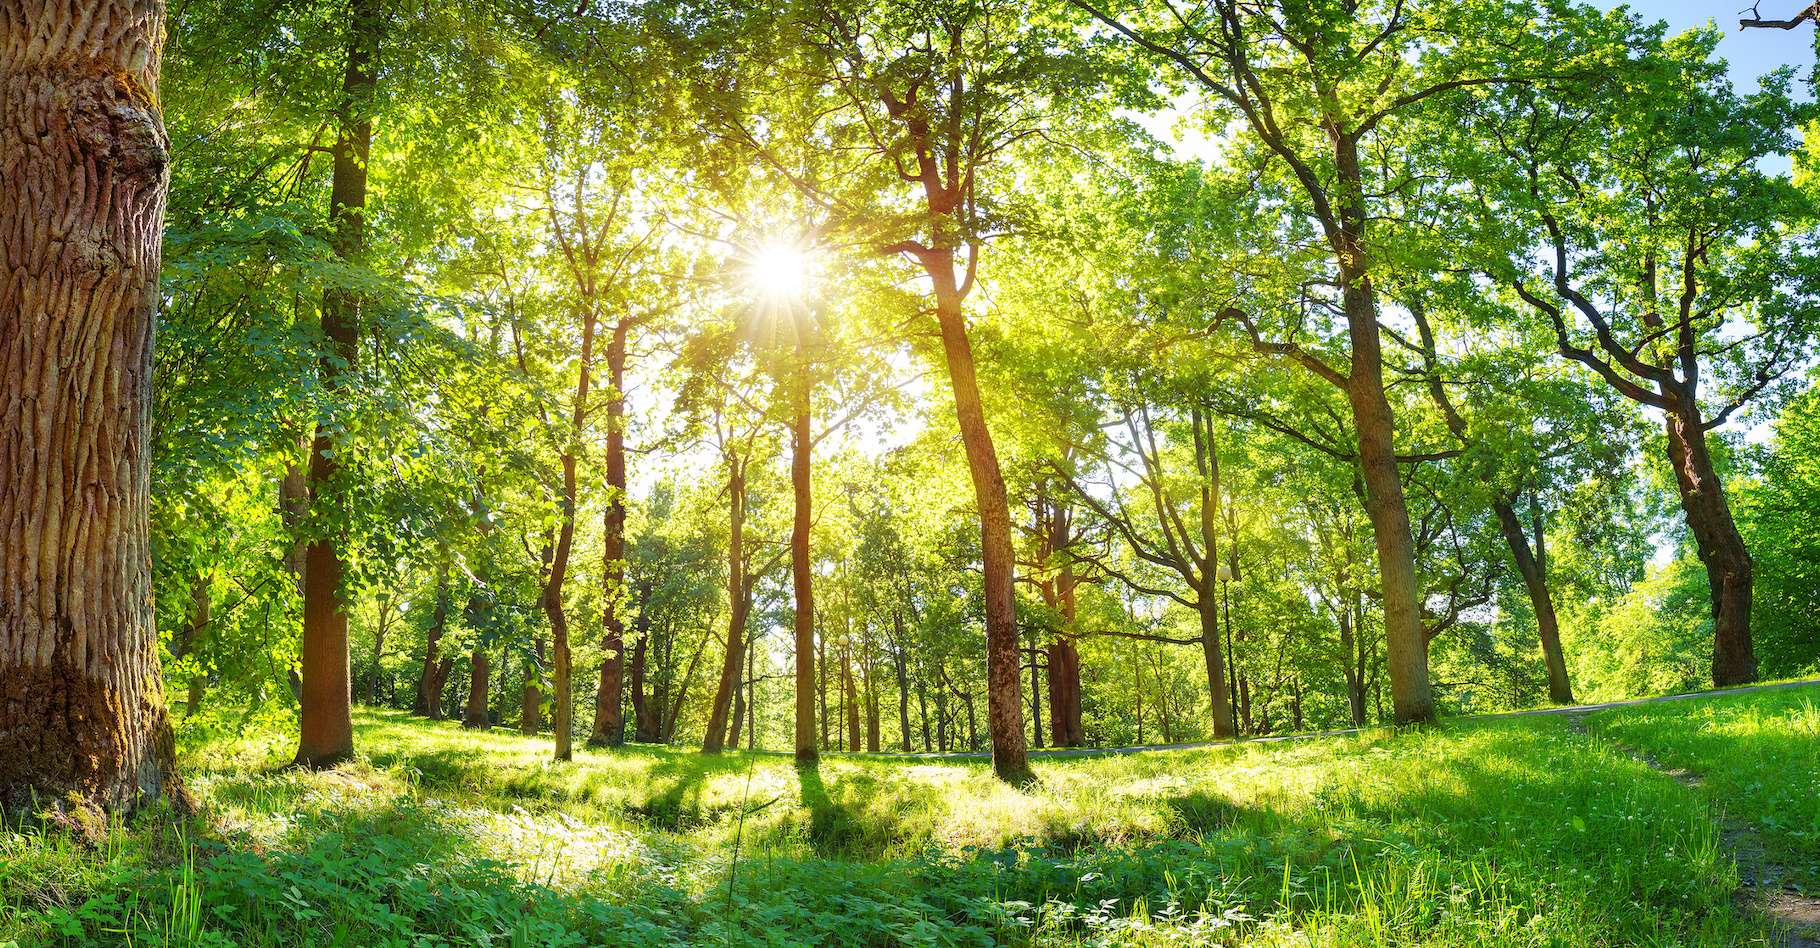 Les forêts en danger : elles ne peuvent pas s’adapter au rythme fou du réchauffement climatique